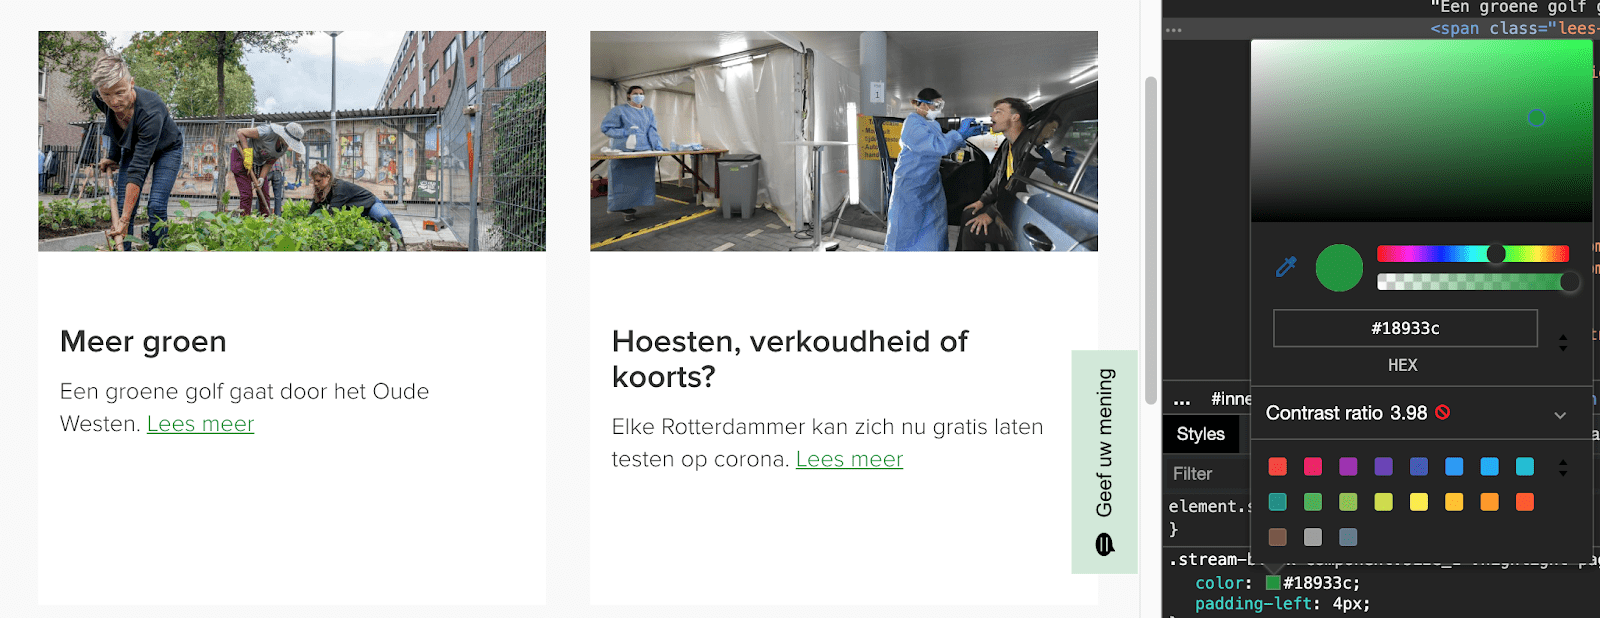 De contrast ratio van de tekst 'Lees meer' op Rotterdam.nl is niet voldoende.